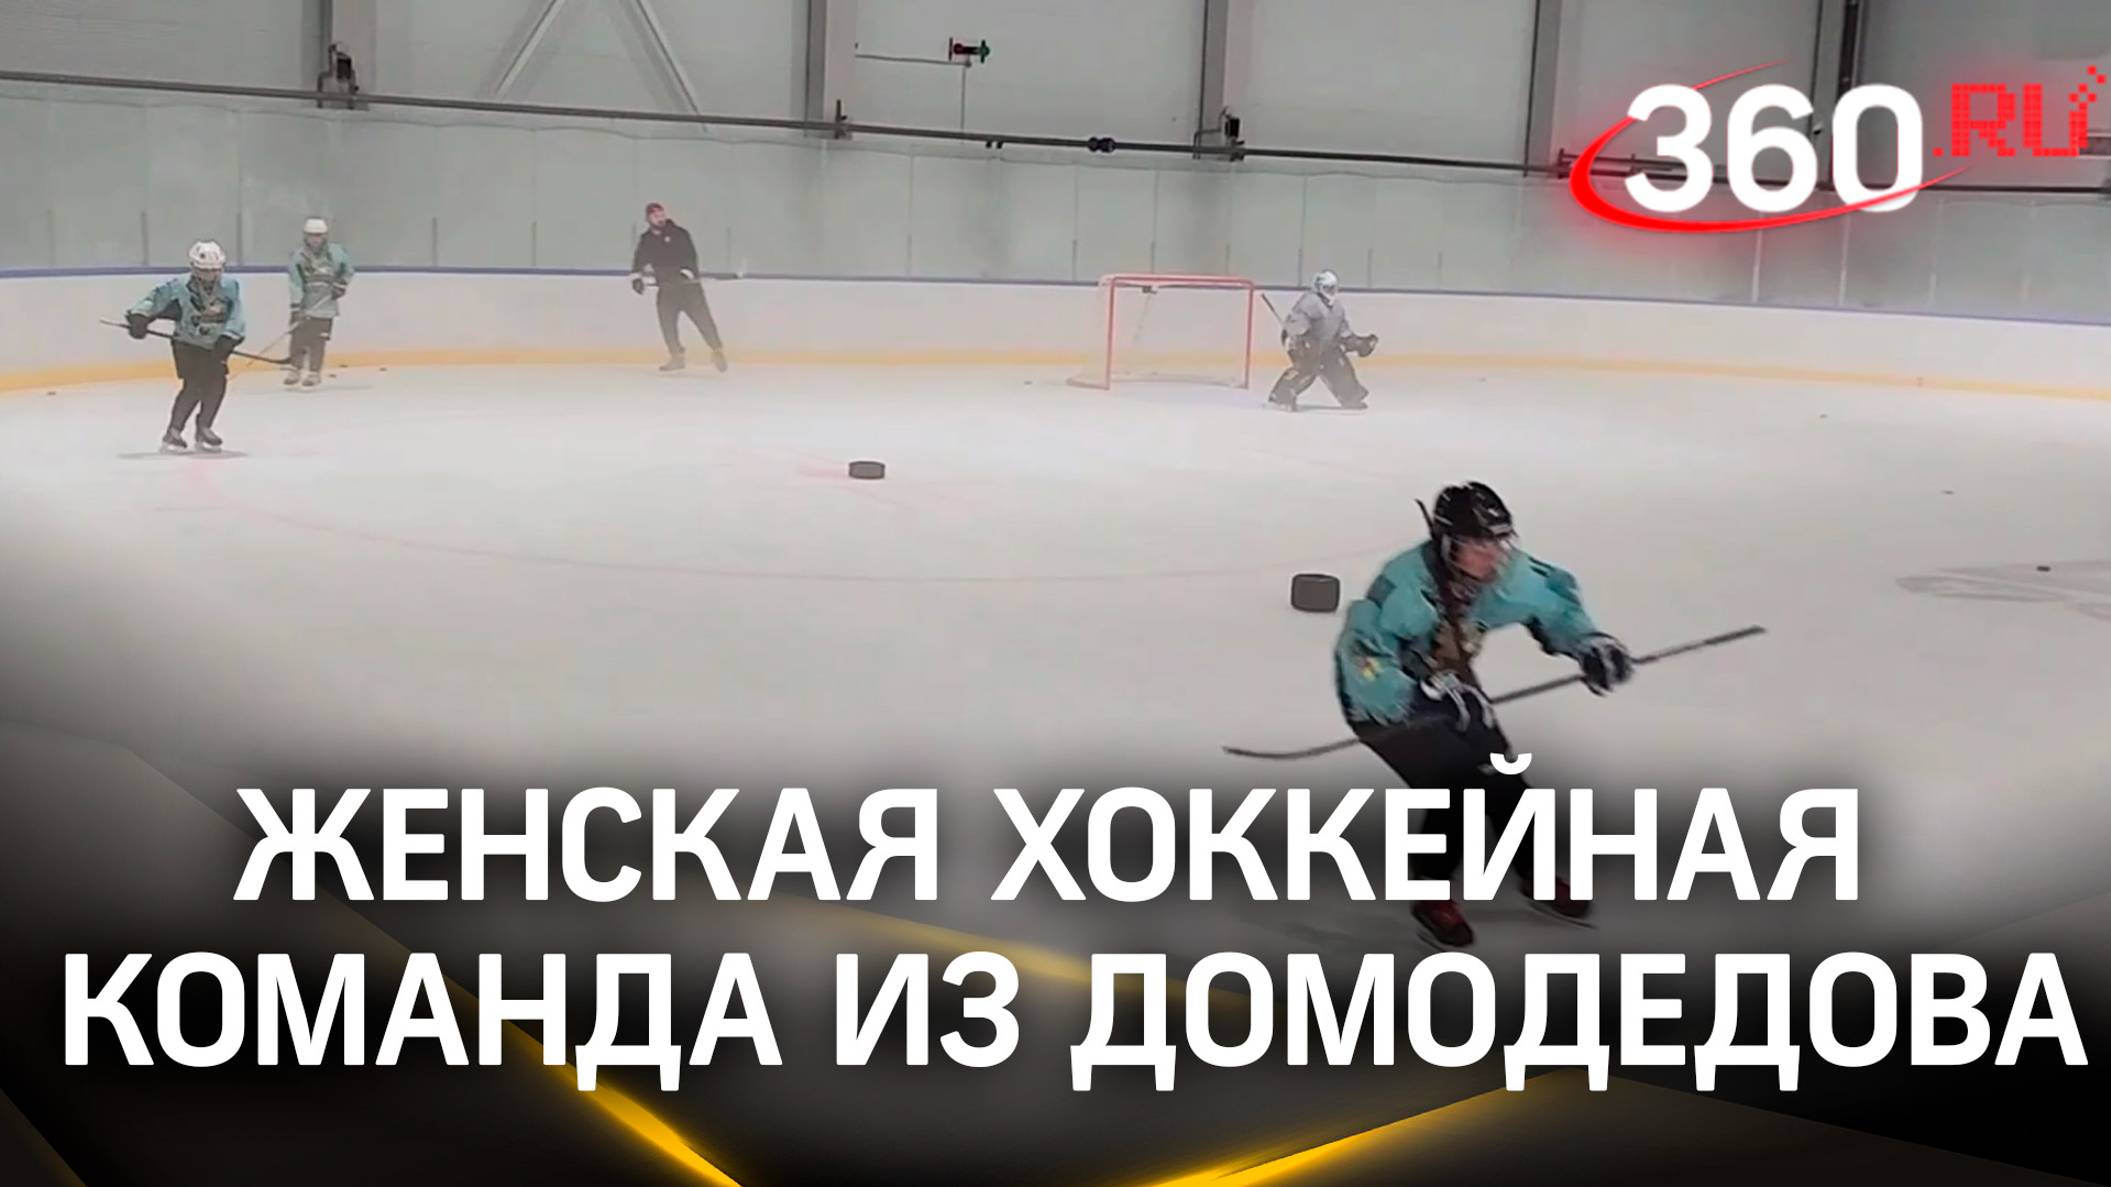 Женская хоккейная команда из Домодедова набирает игроков